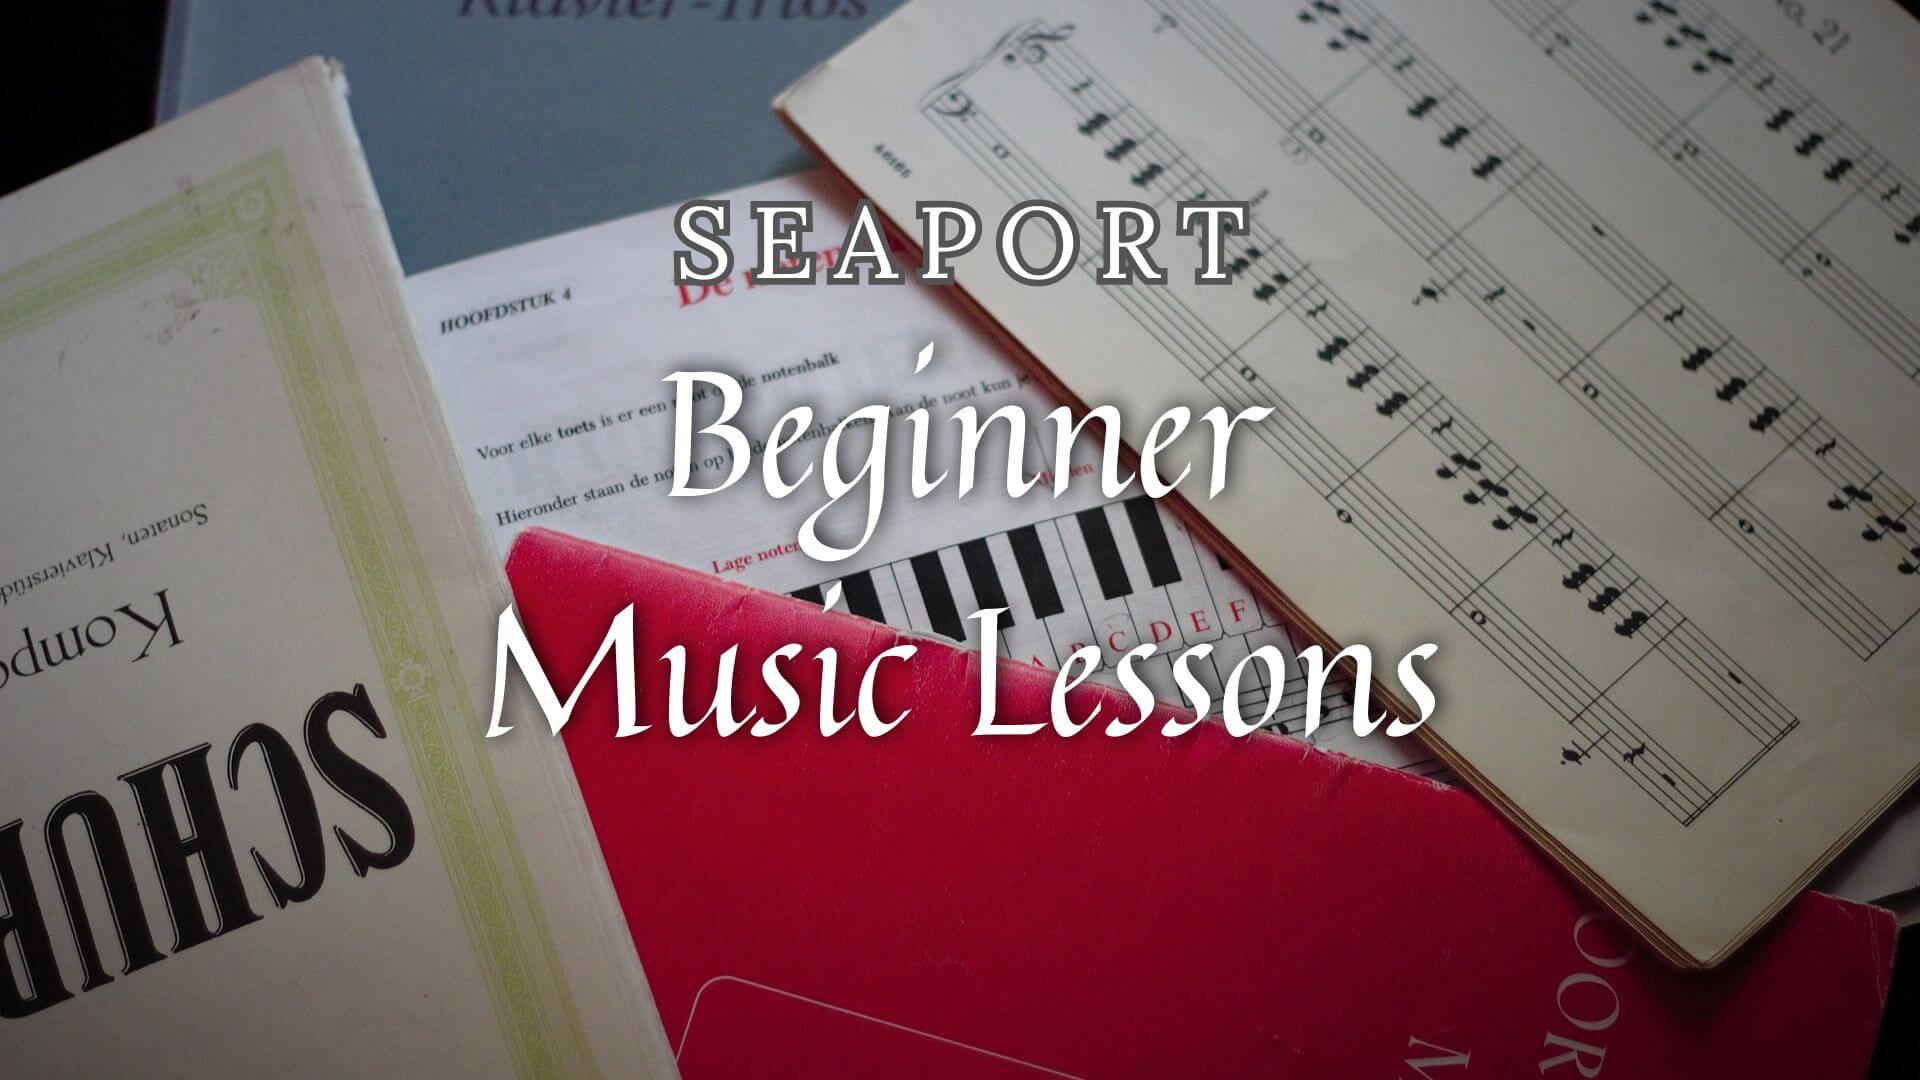 Beginner-Friendly Music Classes for Beginners in Seaport, Massachusetts